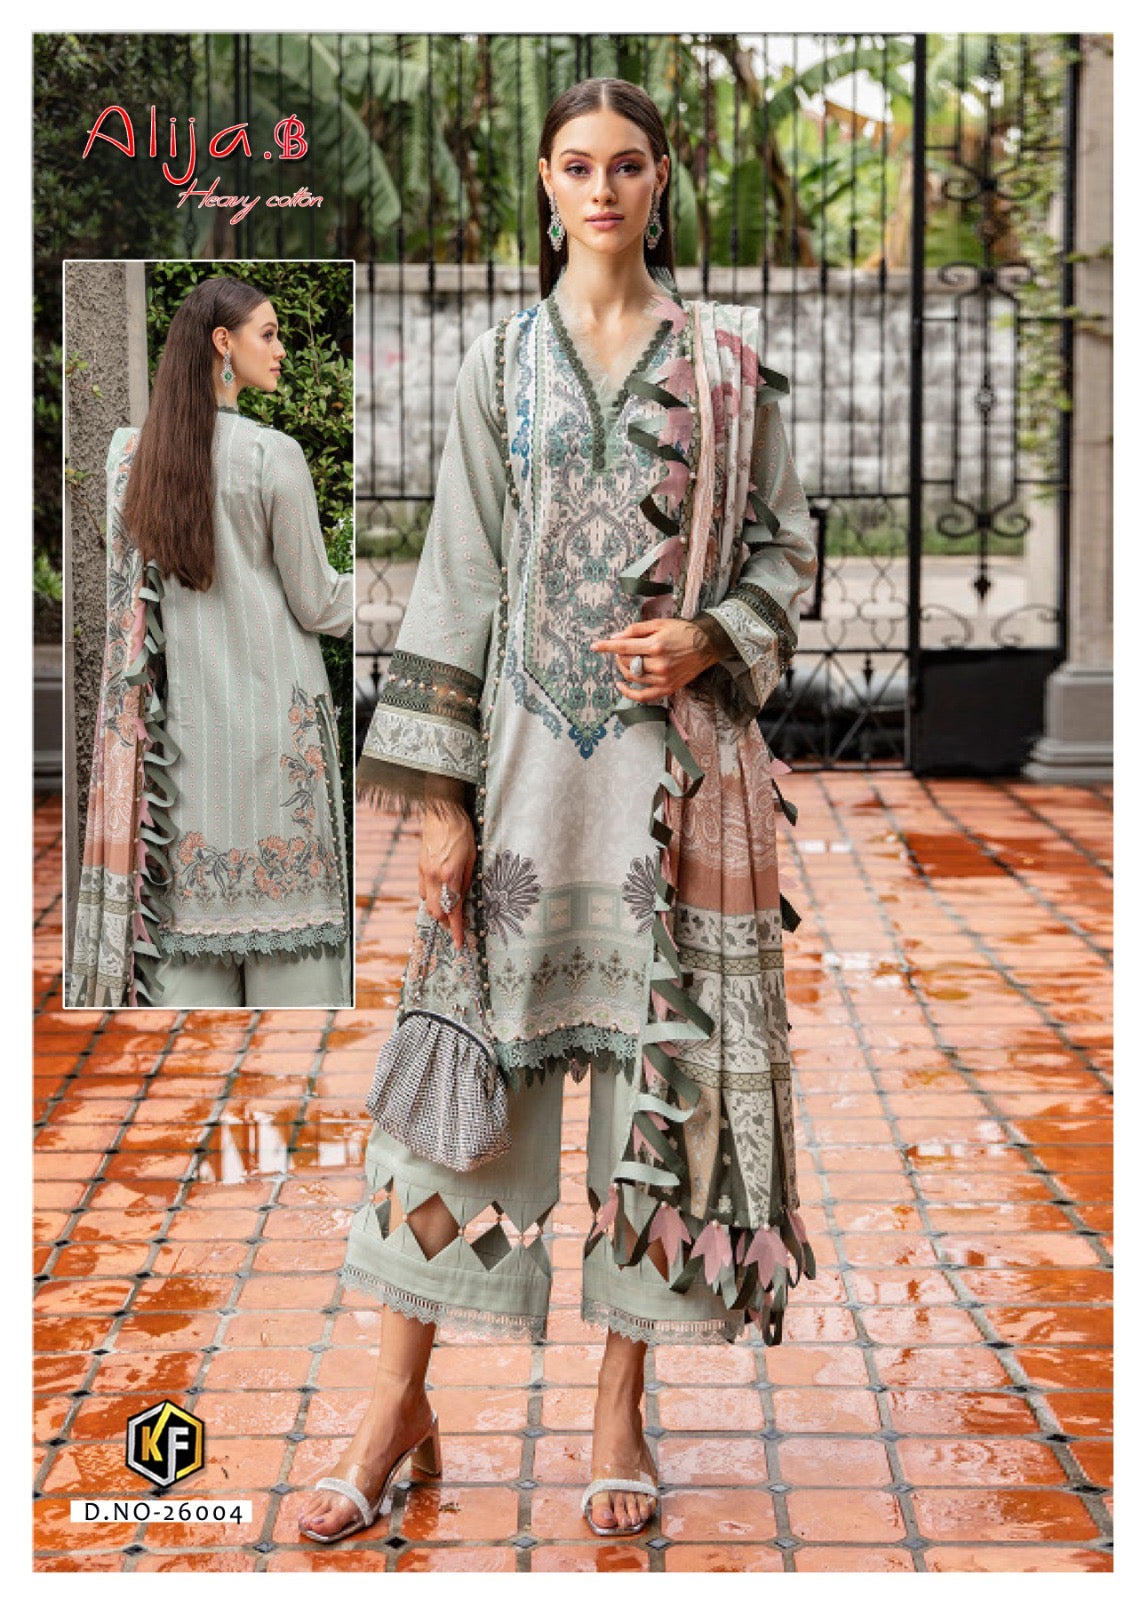 Keval fab Alija b vol 26 Lawn Cotton Printed Dress Material At Wholesale Rate - jilaniwholesalesuit